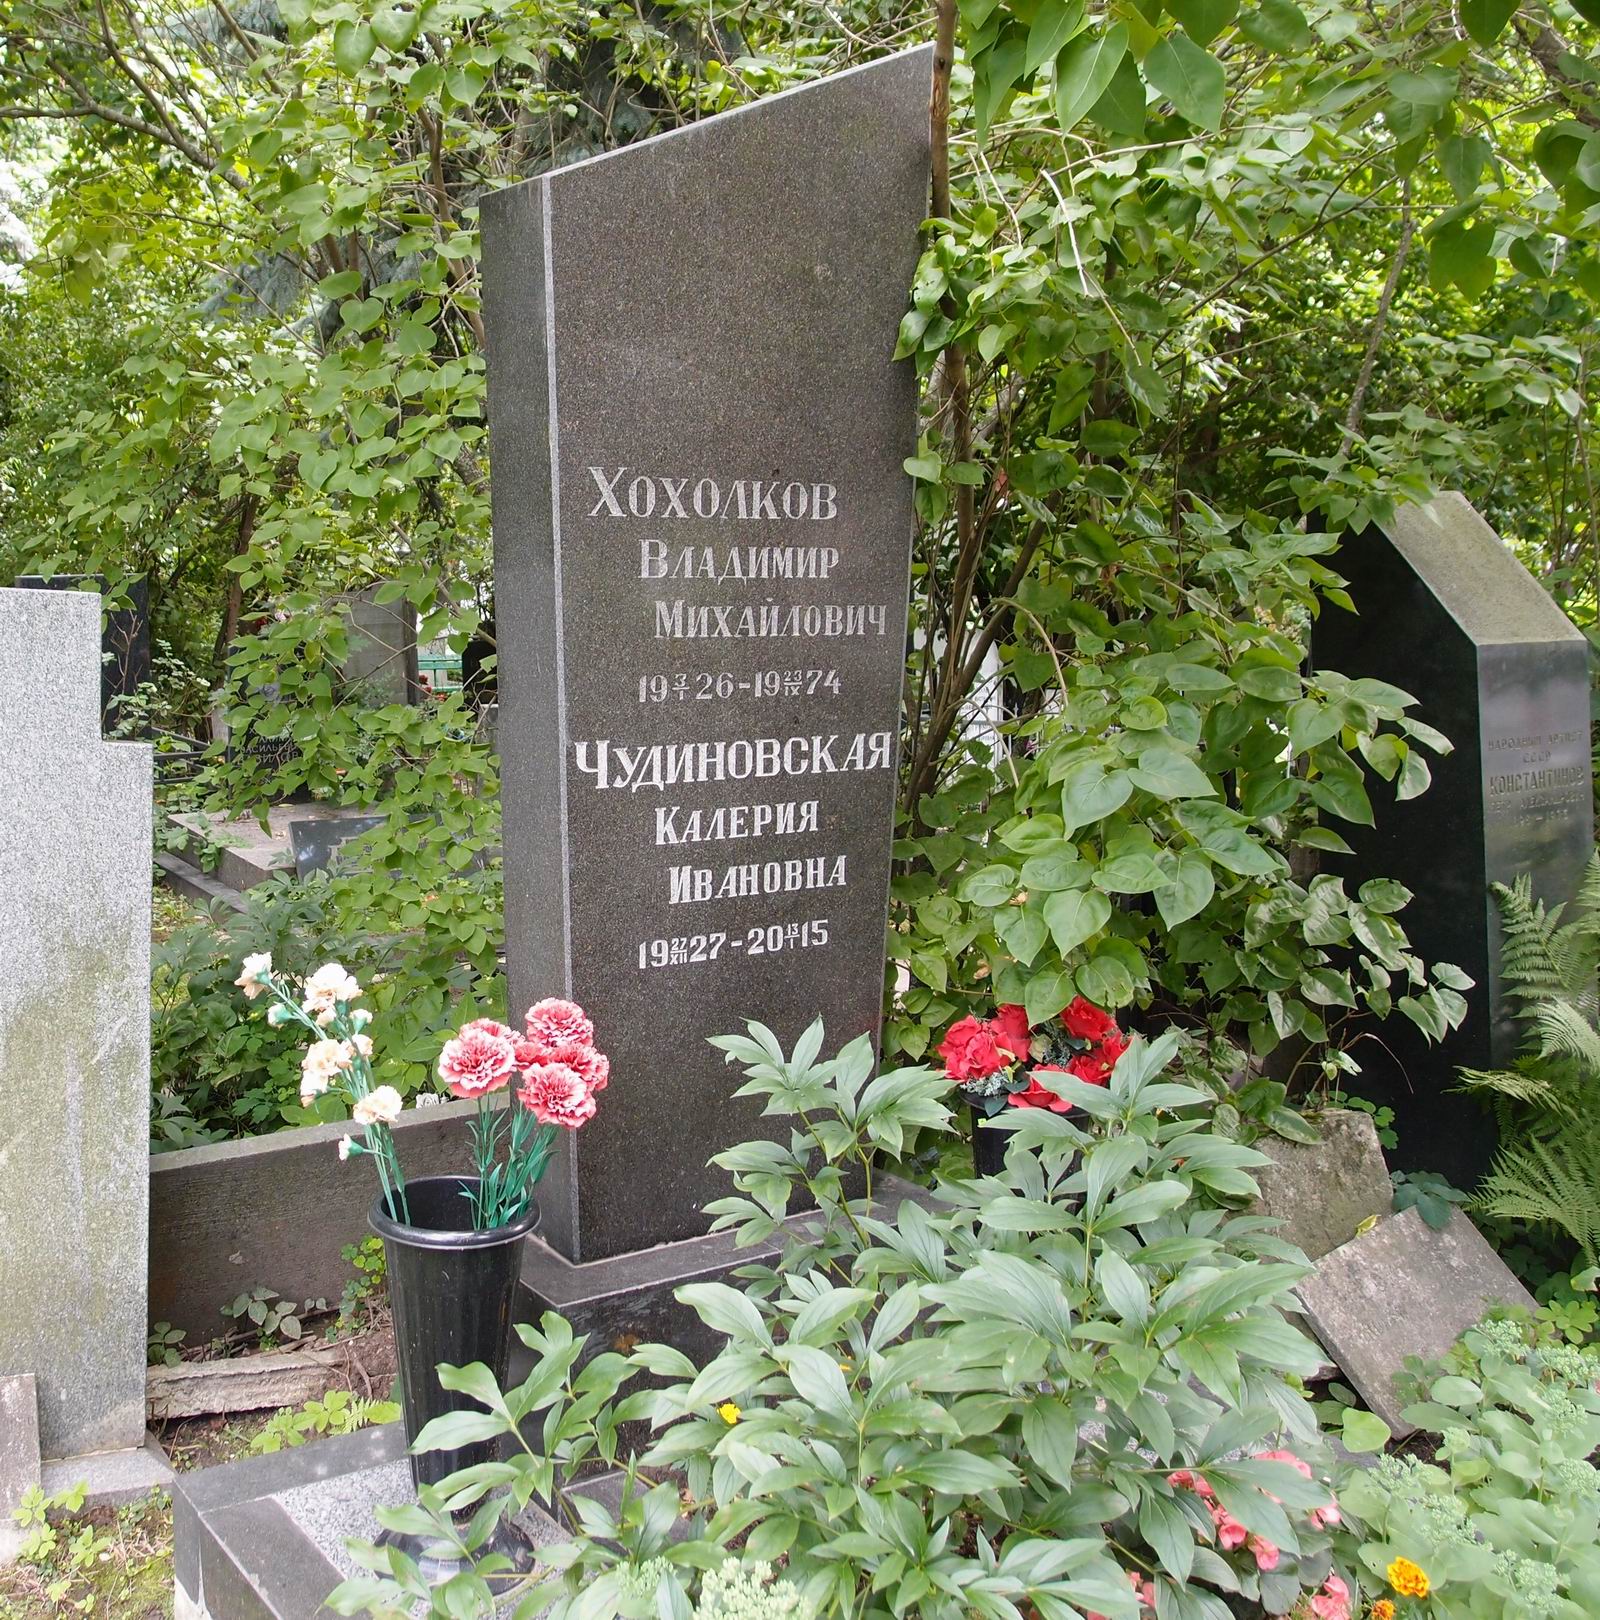 Памятник на могиле Хохолкова В.М. (1926-1974), на Новодевичьем кладбище (2-3-7).